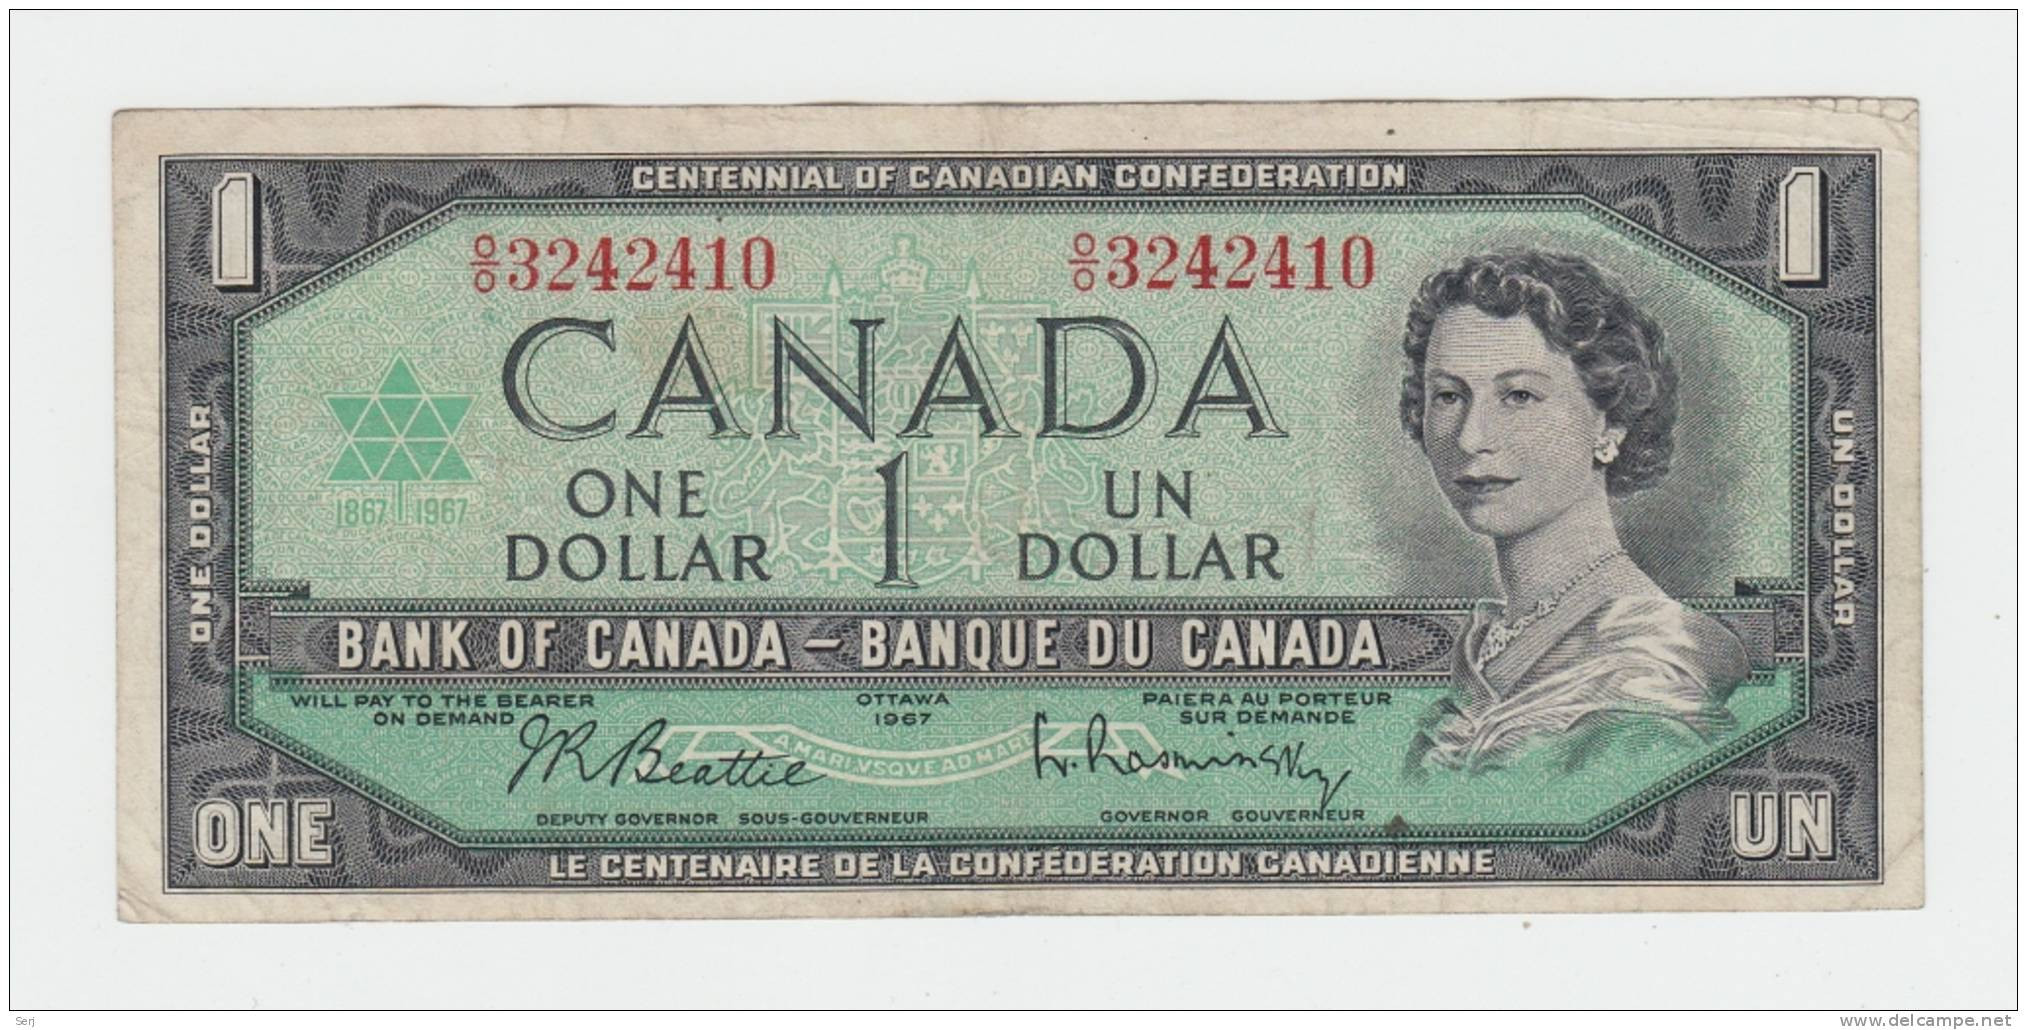 Canada 1 Dollar 1967 VF+ CRISP Banknote P 84b 84 B - Canada